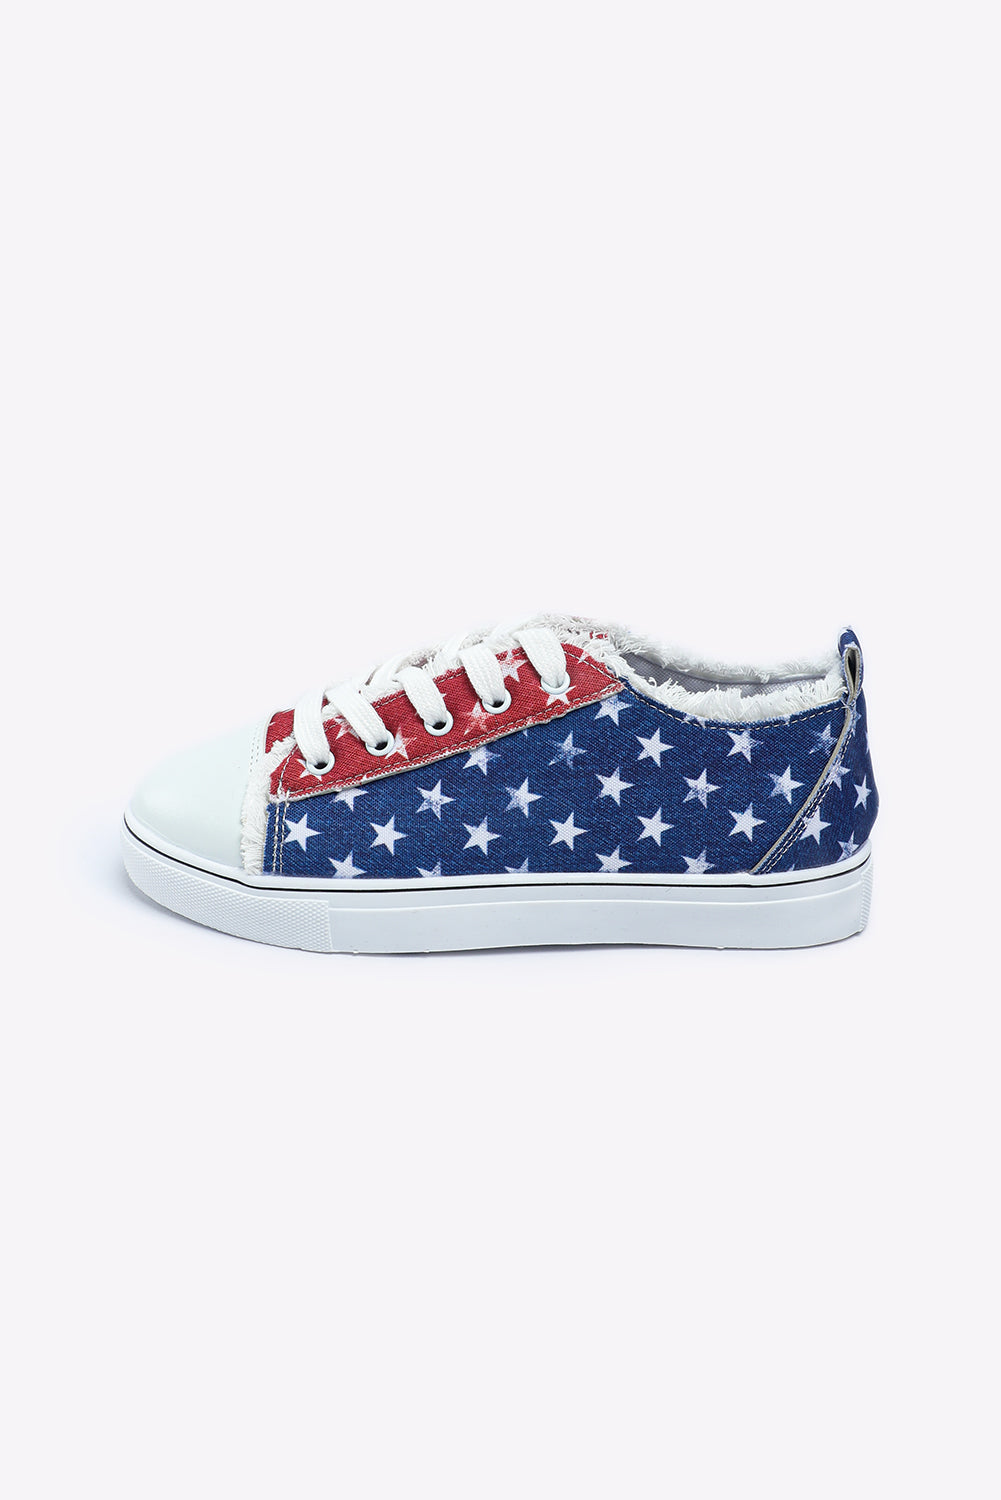 American Flag Sneakers